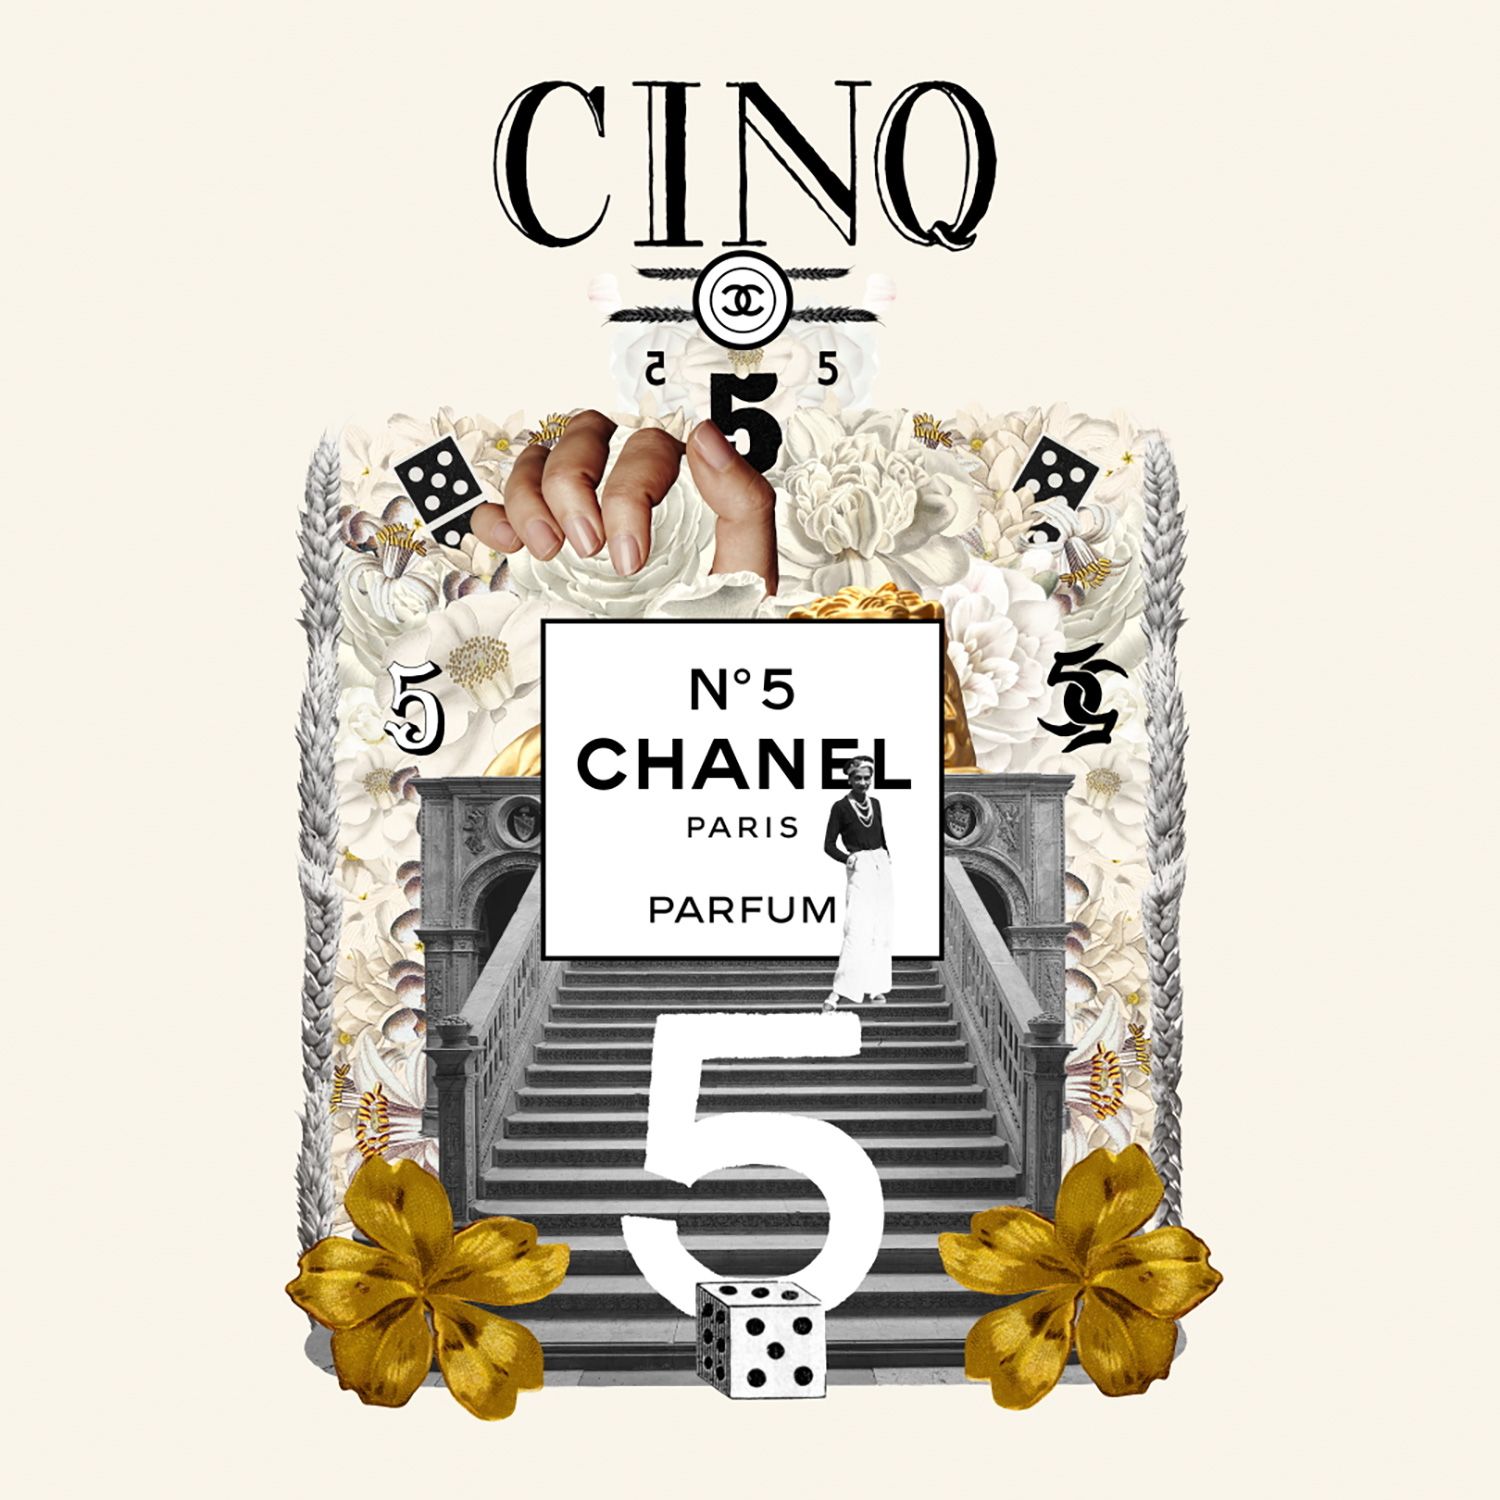 Chanel N5 musa dellalta gioielleria per il suo centenario